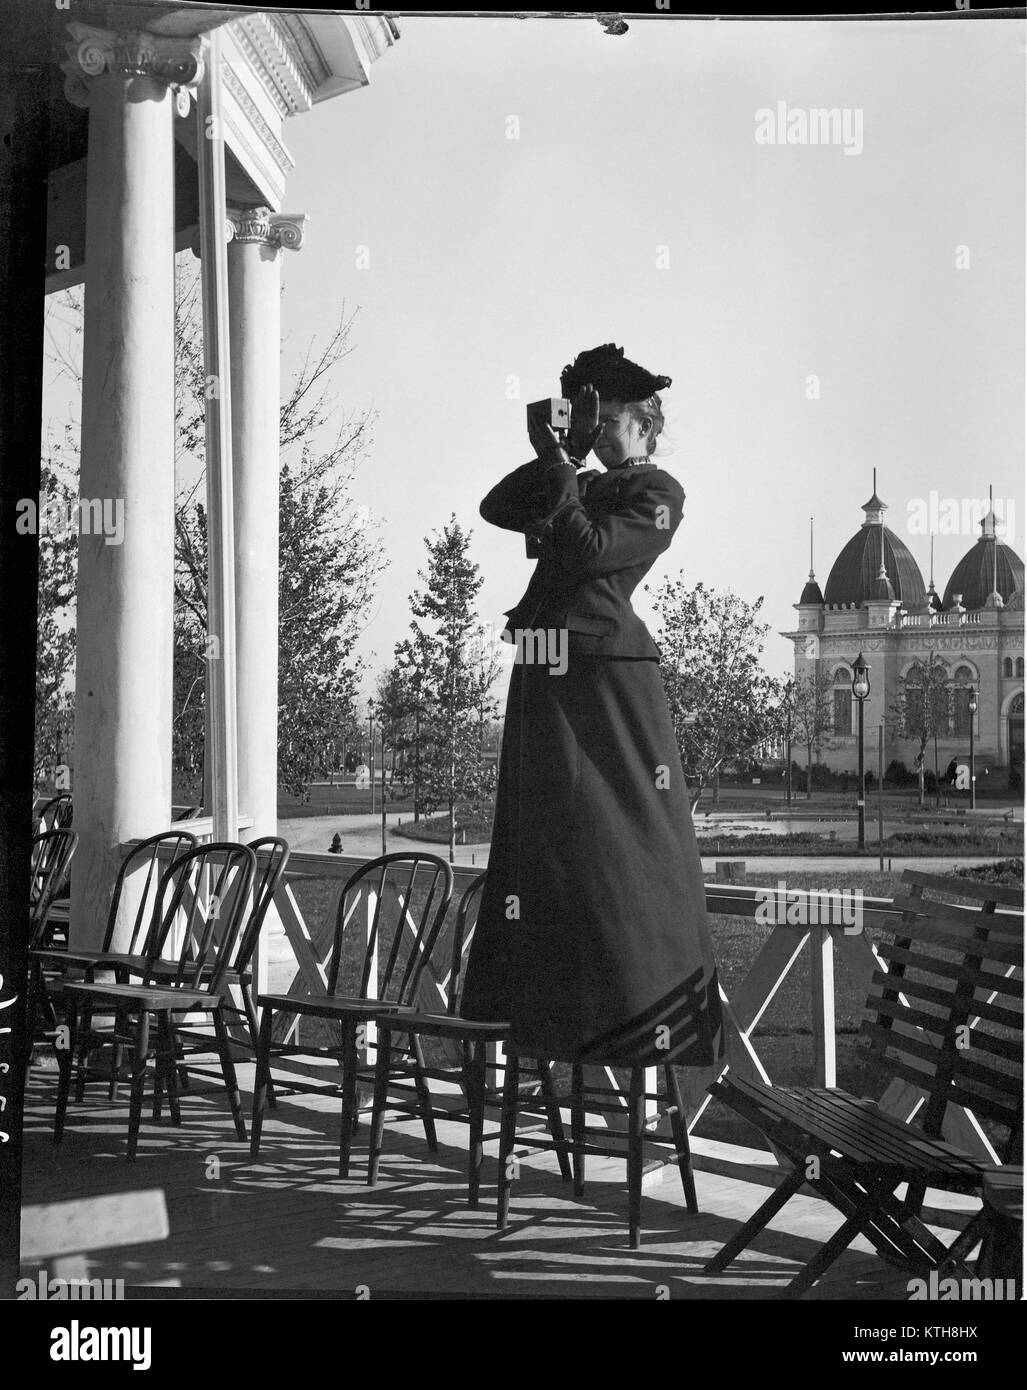 Donna fotografo presso il Trans-Mississippi ed esposizione internazionale. Questa fiera mondiale si è tenuto a Omaha, Nebraska dal 1 Giugno al 1 novembre del 1898. Immagine dalla fotocamera originale negativo nitrato. Foto Stock